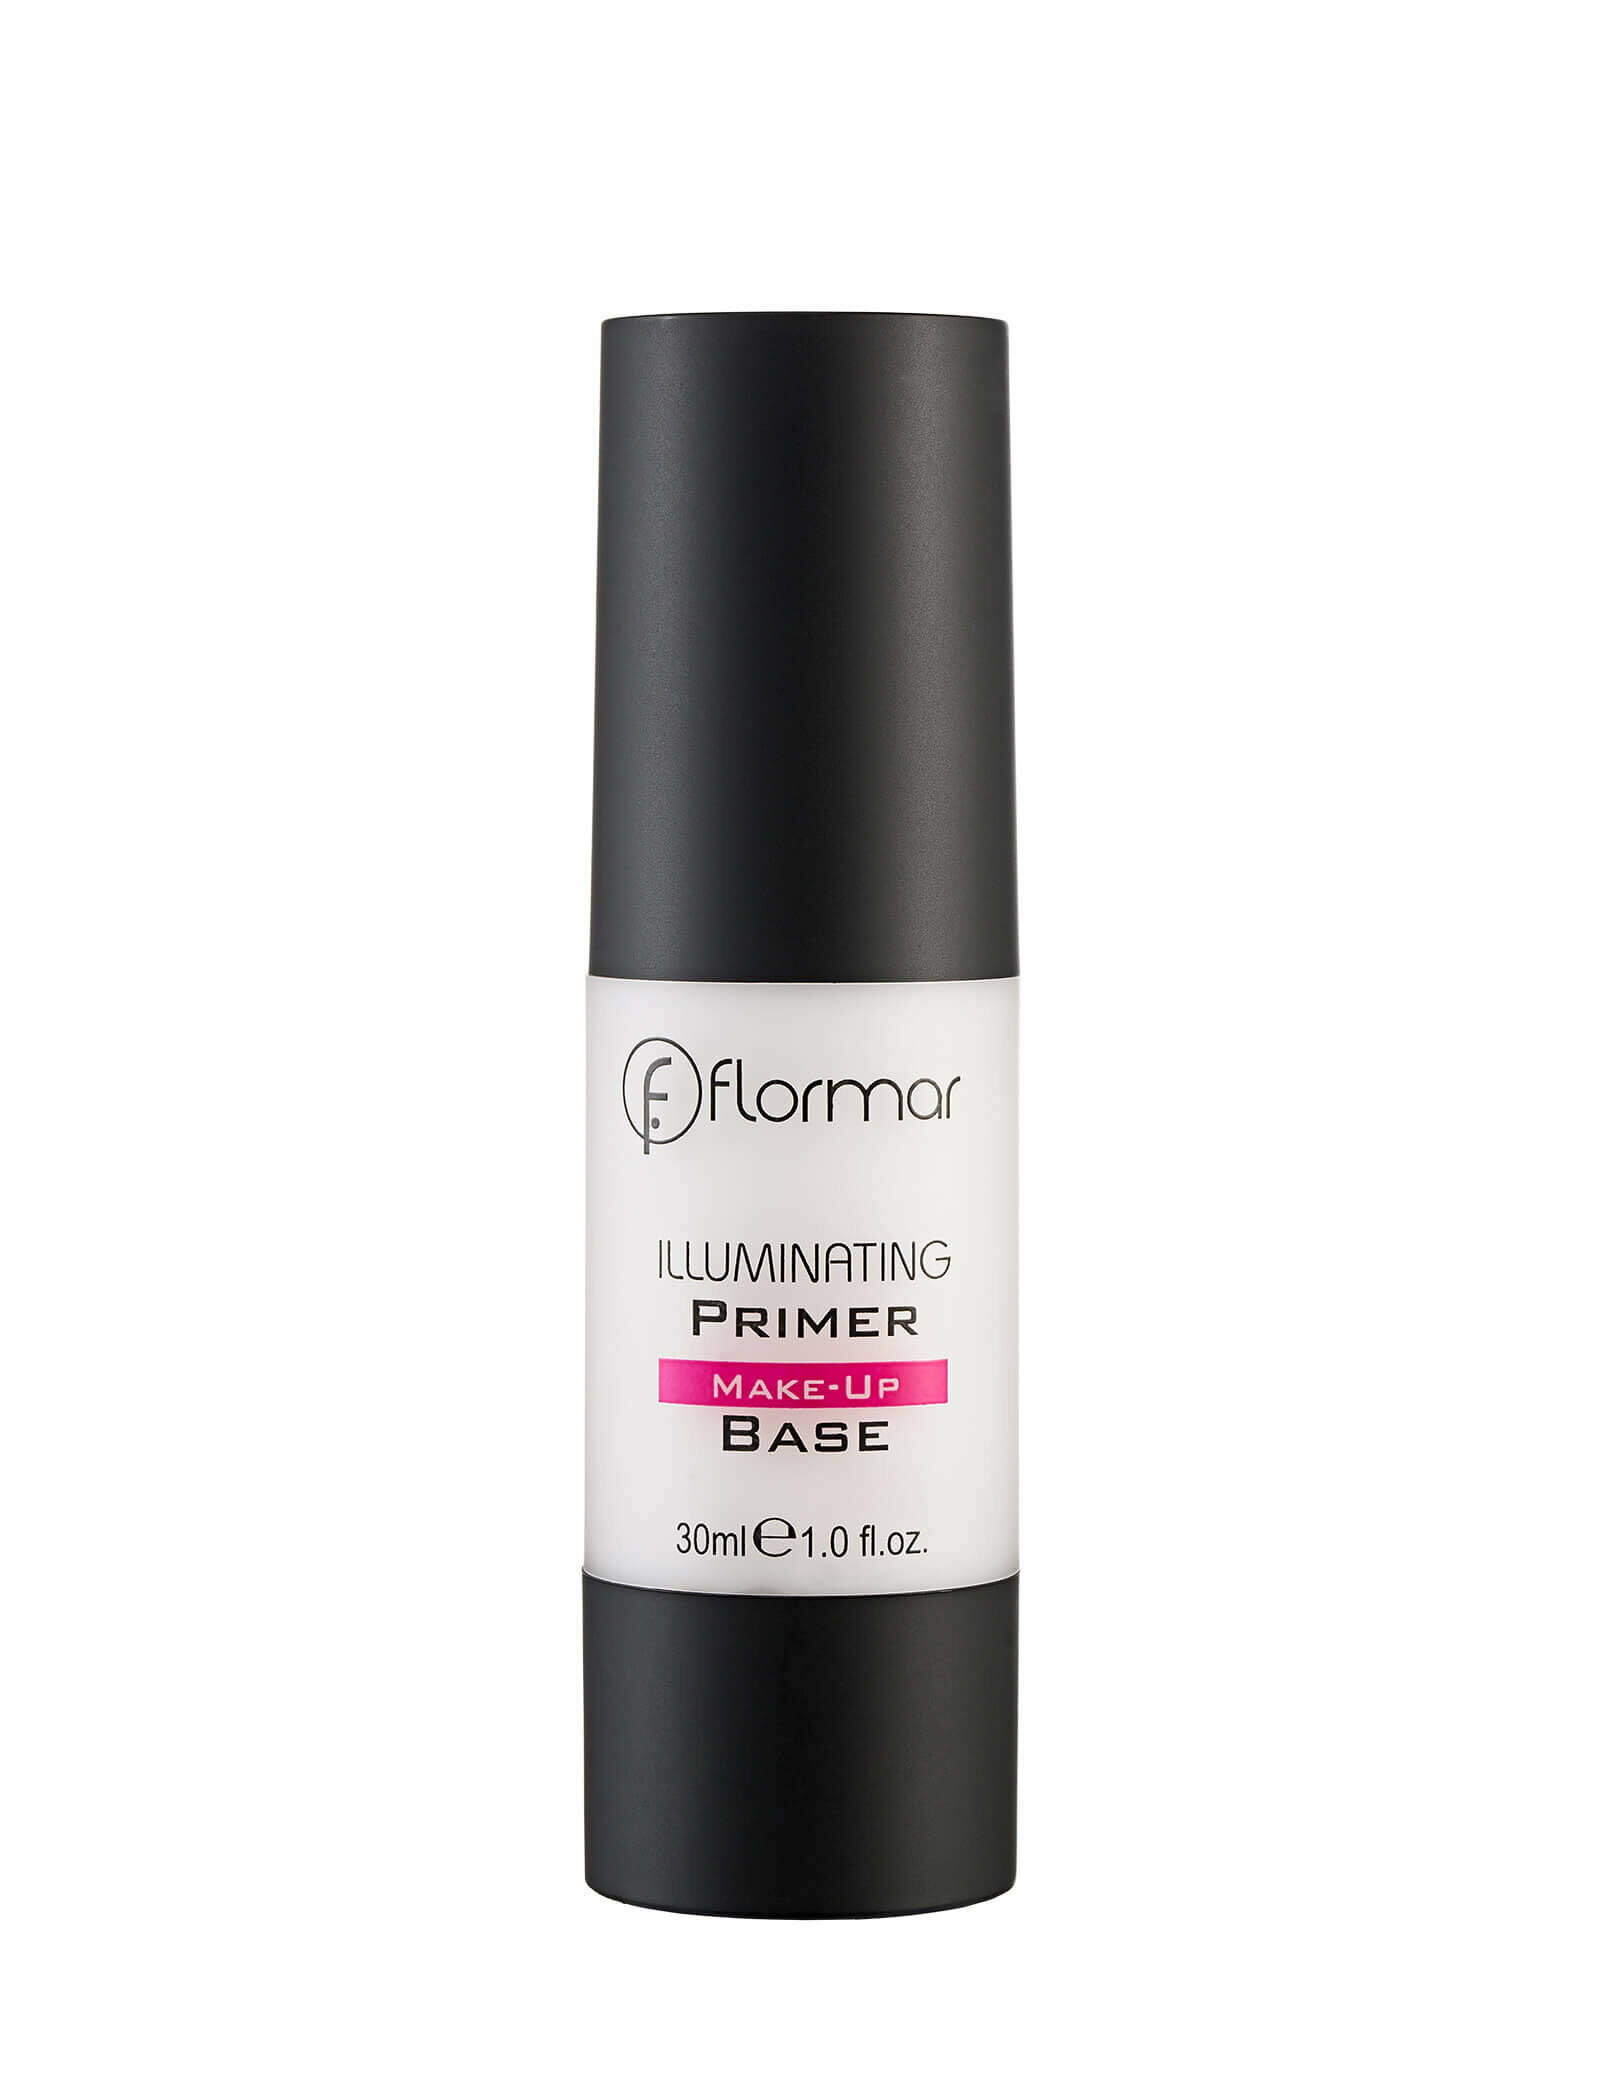 Flormar Illuminating Primer Makeup Base